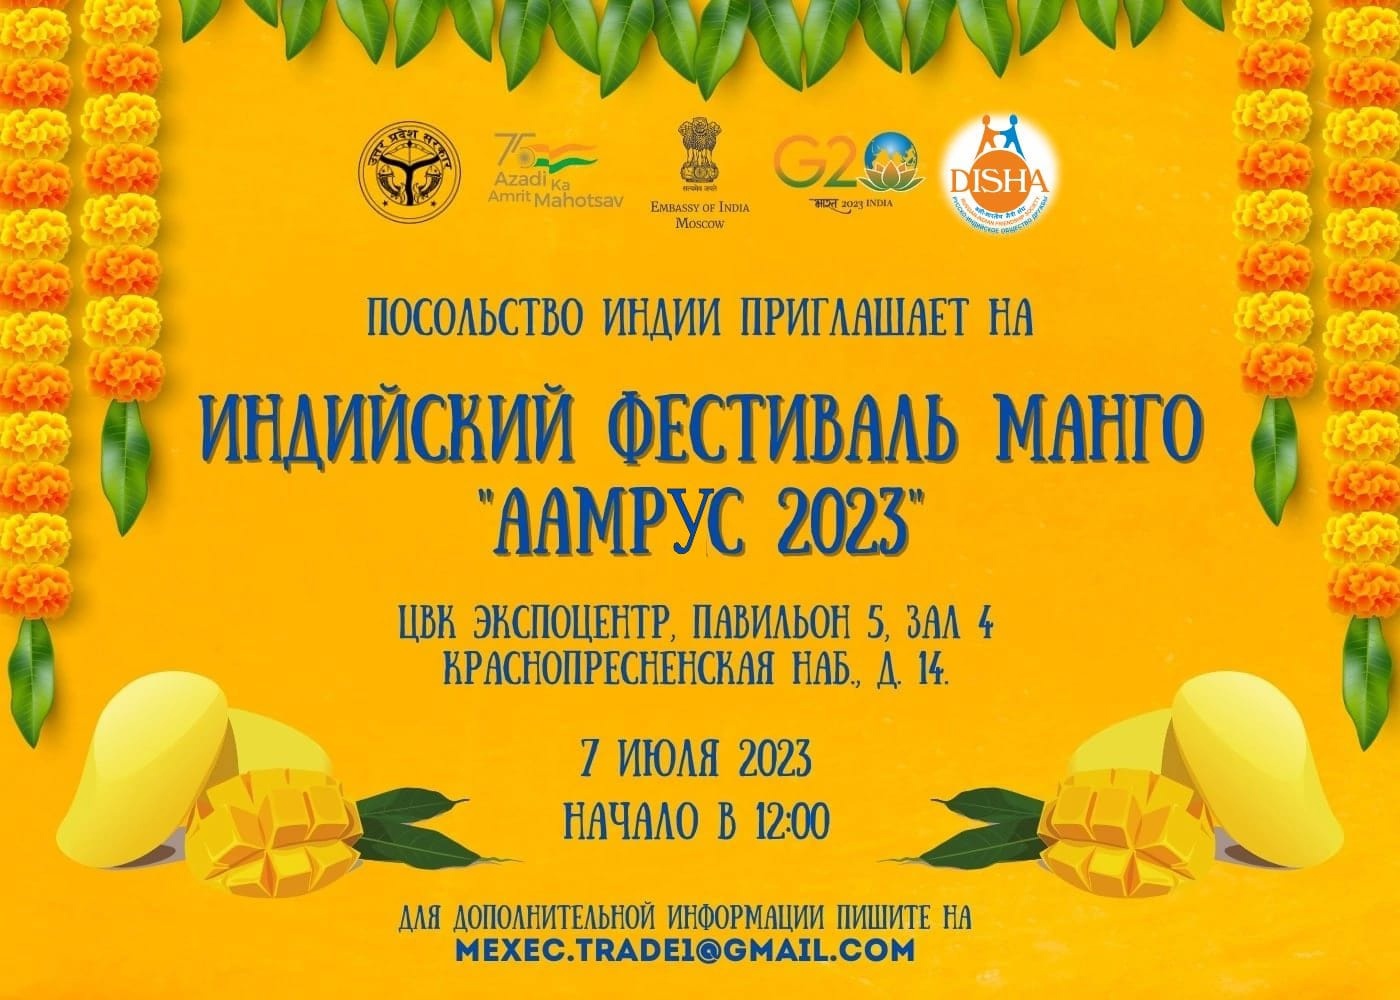 Индийский манго фестиваль «ААМРУС 2023» Копировать